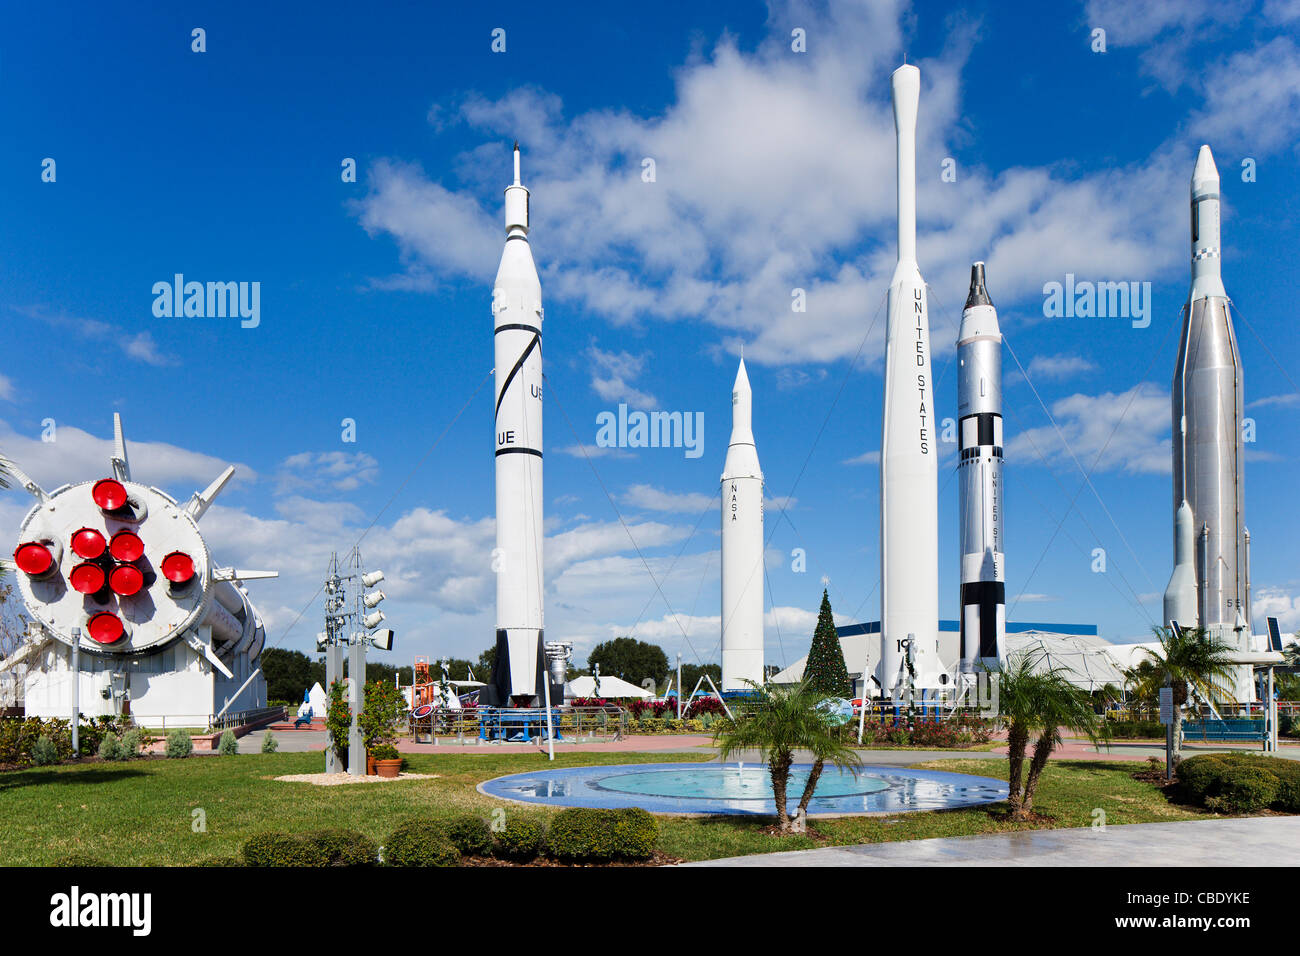 Il Razzo giardino, Kennedy Space Center Visitor Complex, Merritt Island, Florida, Stati Uniti d'America Foto Stock